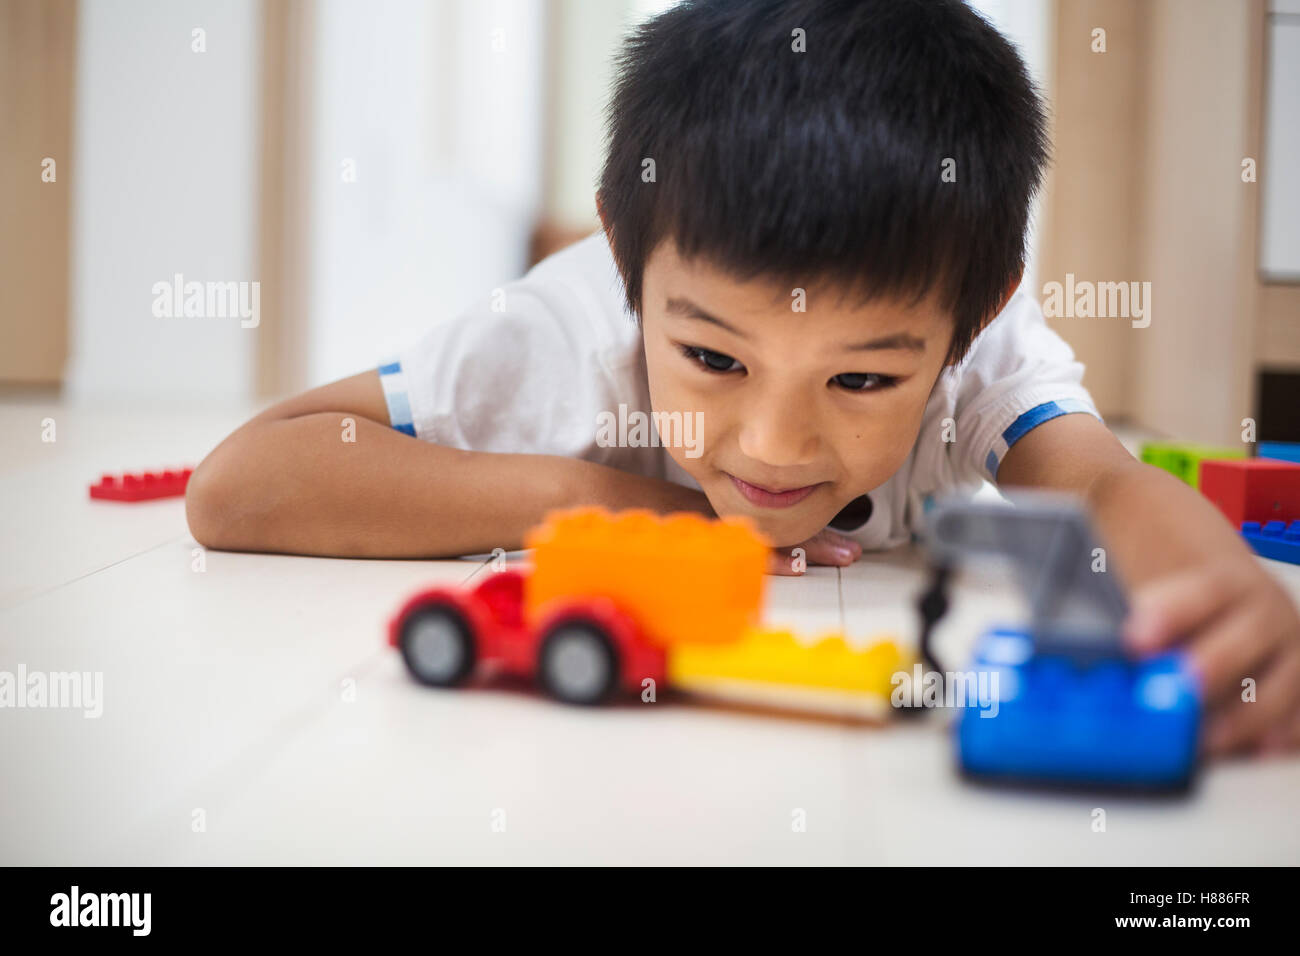 Maison de famille. Un garçon jouant avec des voitures sur le plancher. Banque D'Images